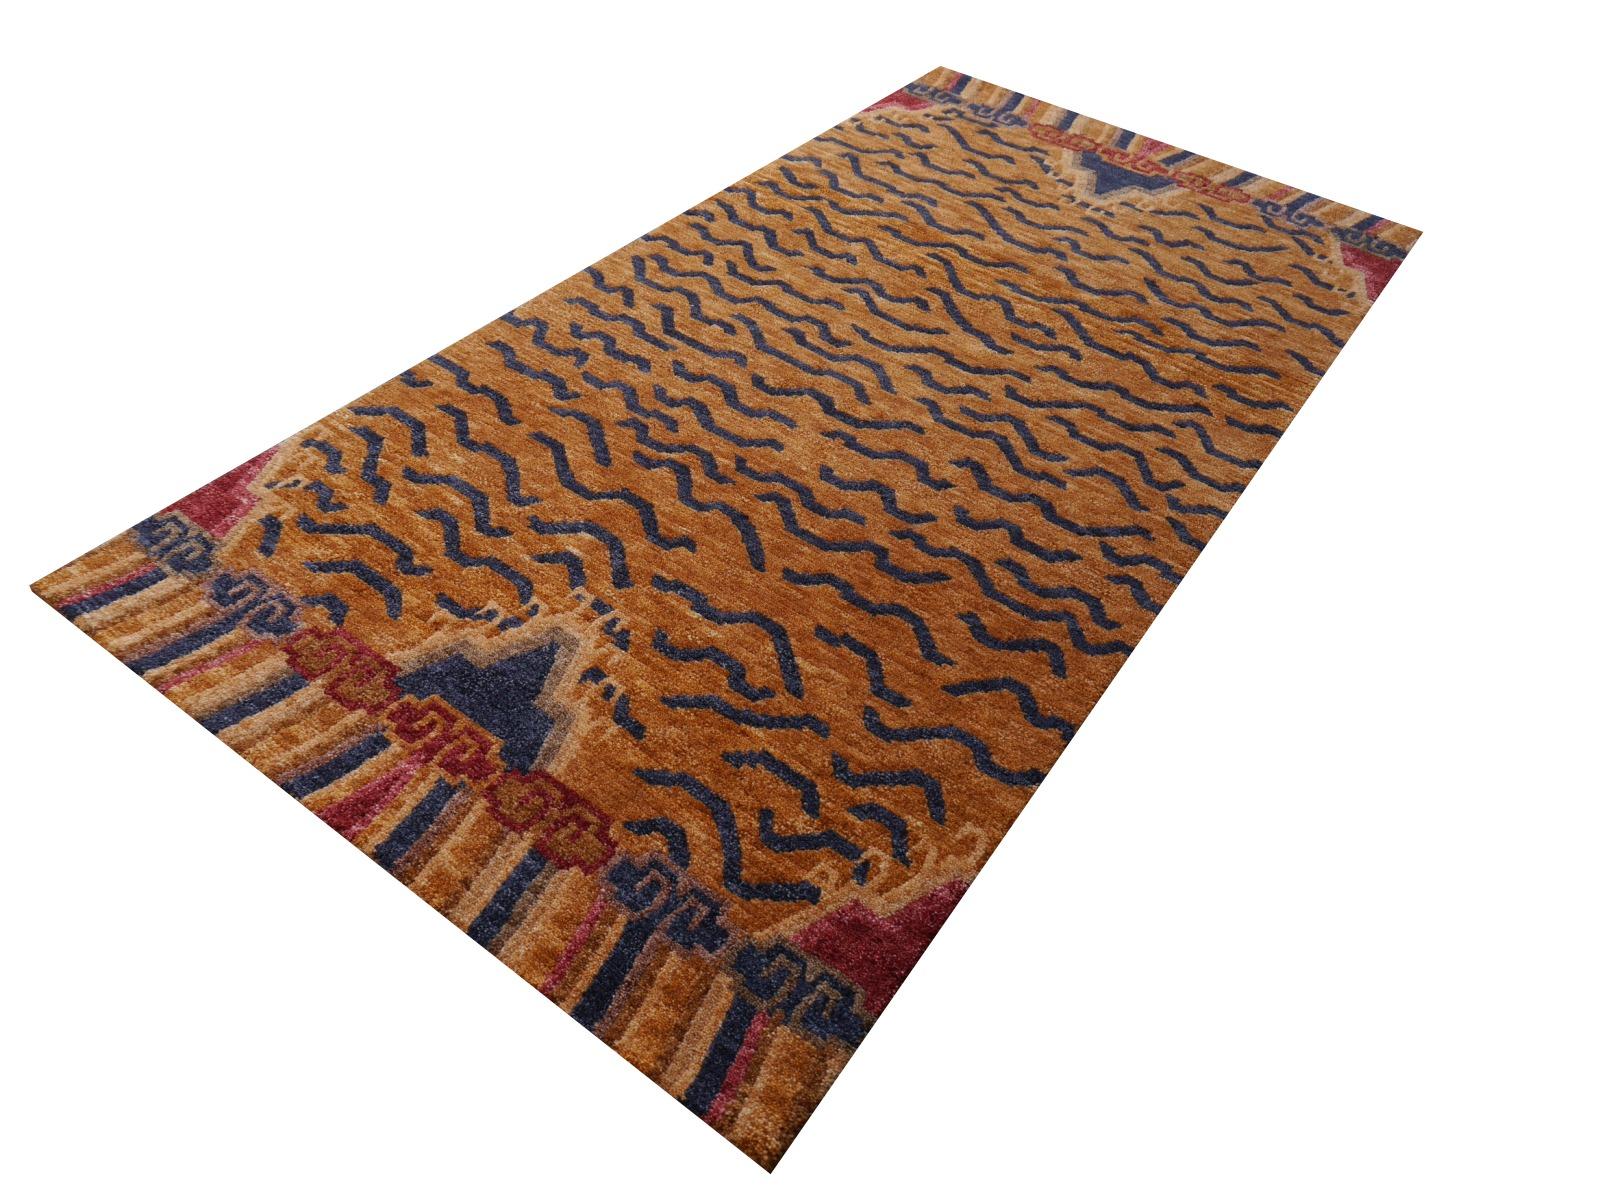 Un tapis tigré tibétain, noué à la main au Népal.

Ce motif traditionnel de tapis tigré se trouve généralement sur des tapis anciens appelés Khaden. Il s'agit d'un tapis de petite taille, d'environ 3 x 6 pieds, qui était utilisé au Tibet pour